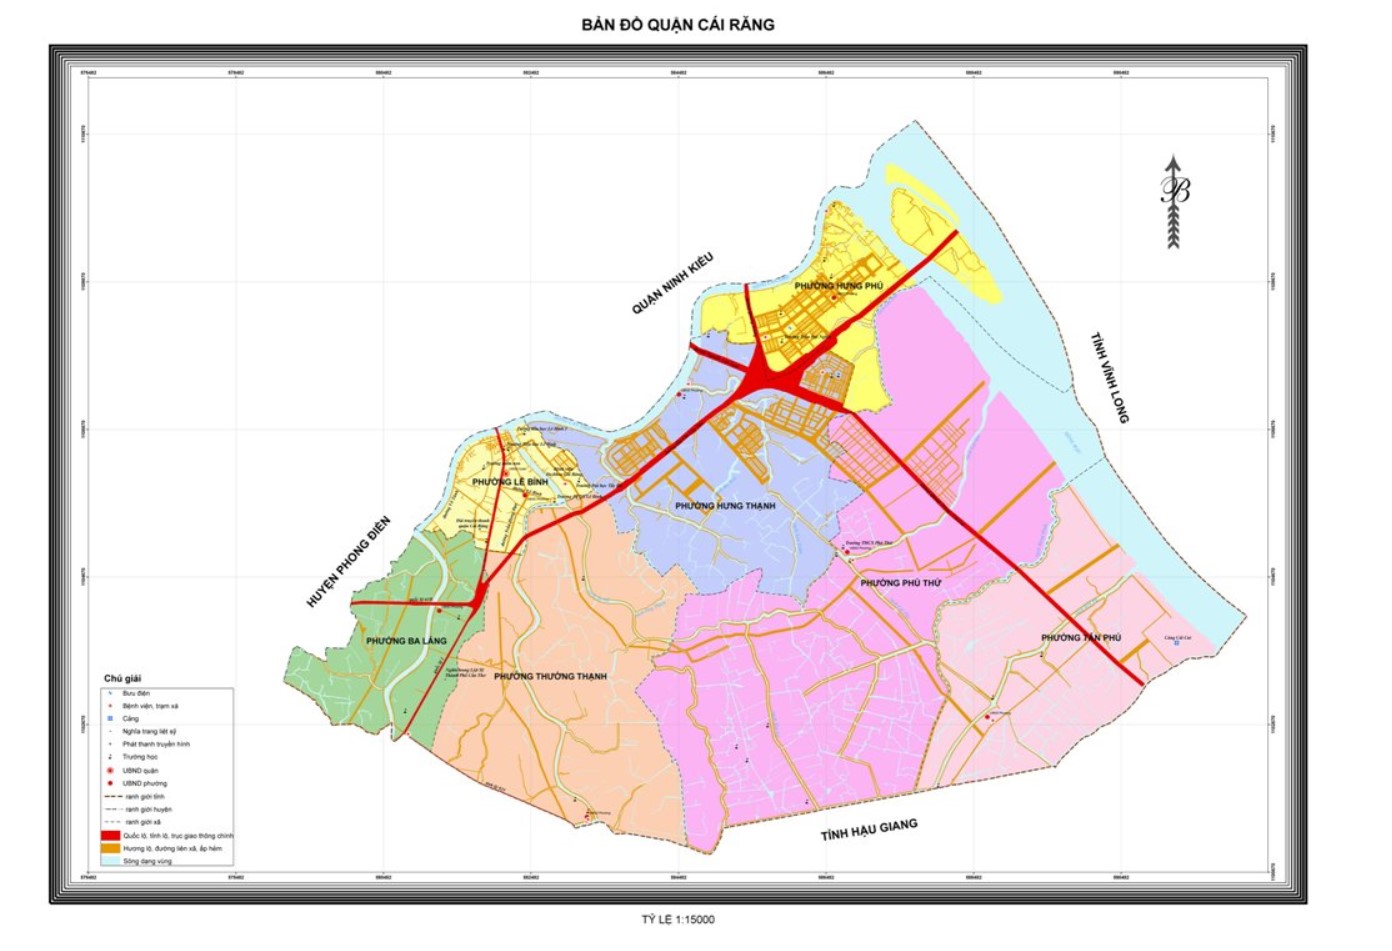 Bản đồ hành chính quận Bình Thủy khổ lớn năm 2022